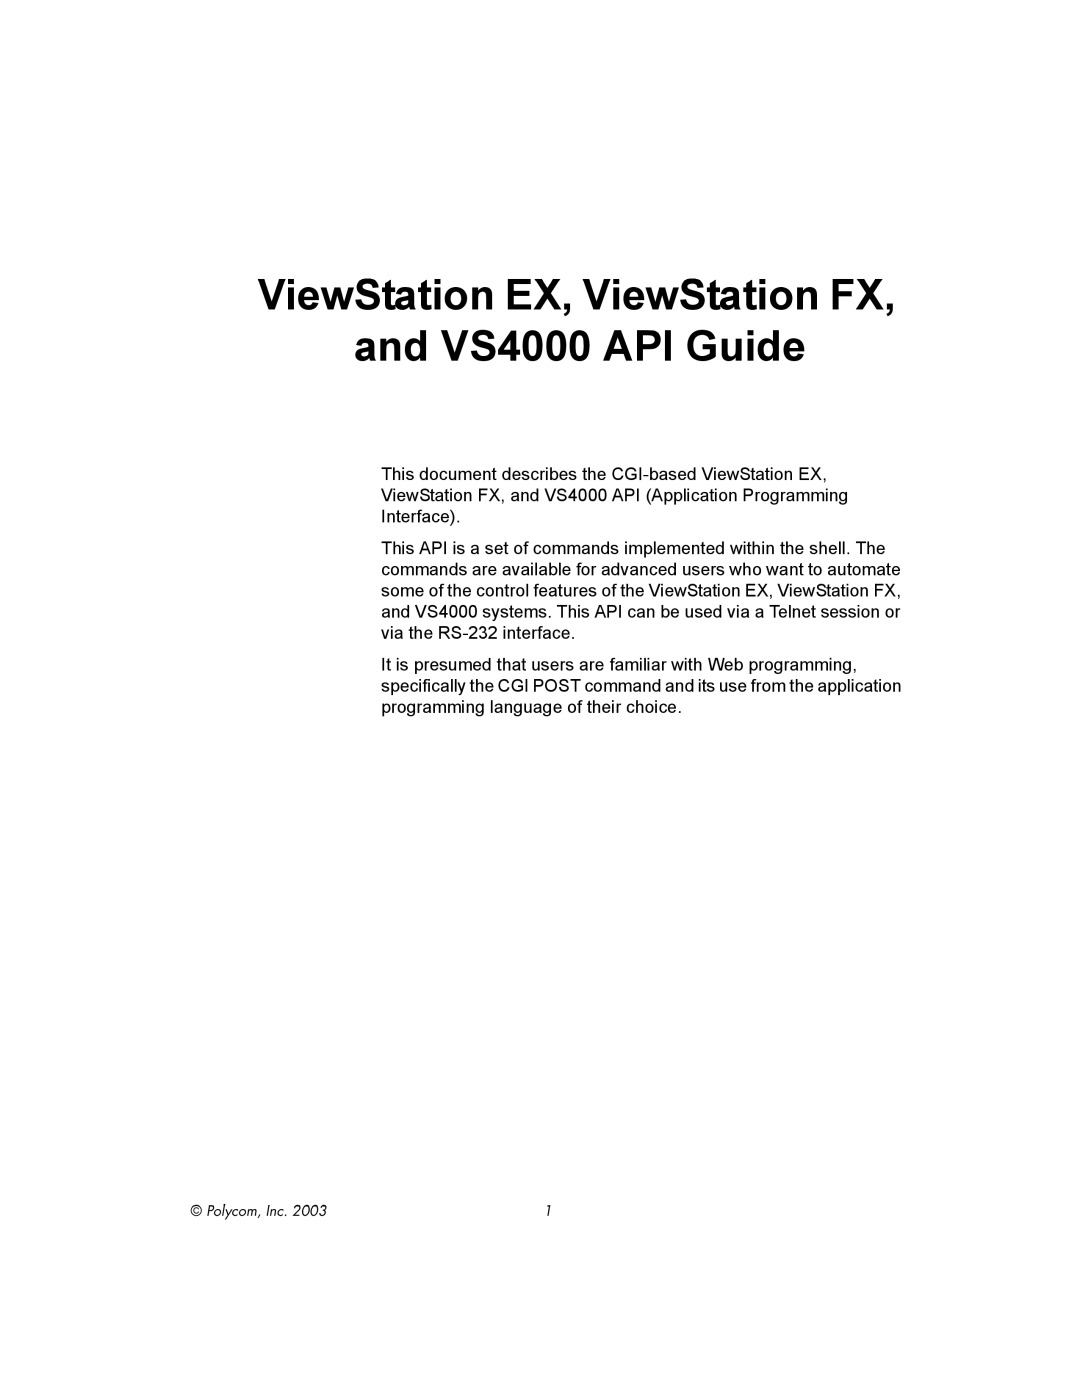 Polycom VIEWSTATION EX manual ViewStation EX, ViewStation FX, and VS4000 API Guide, Polycom, Inc 